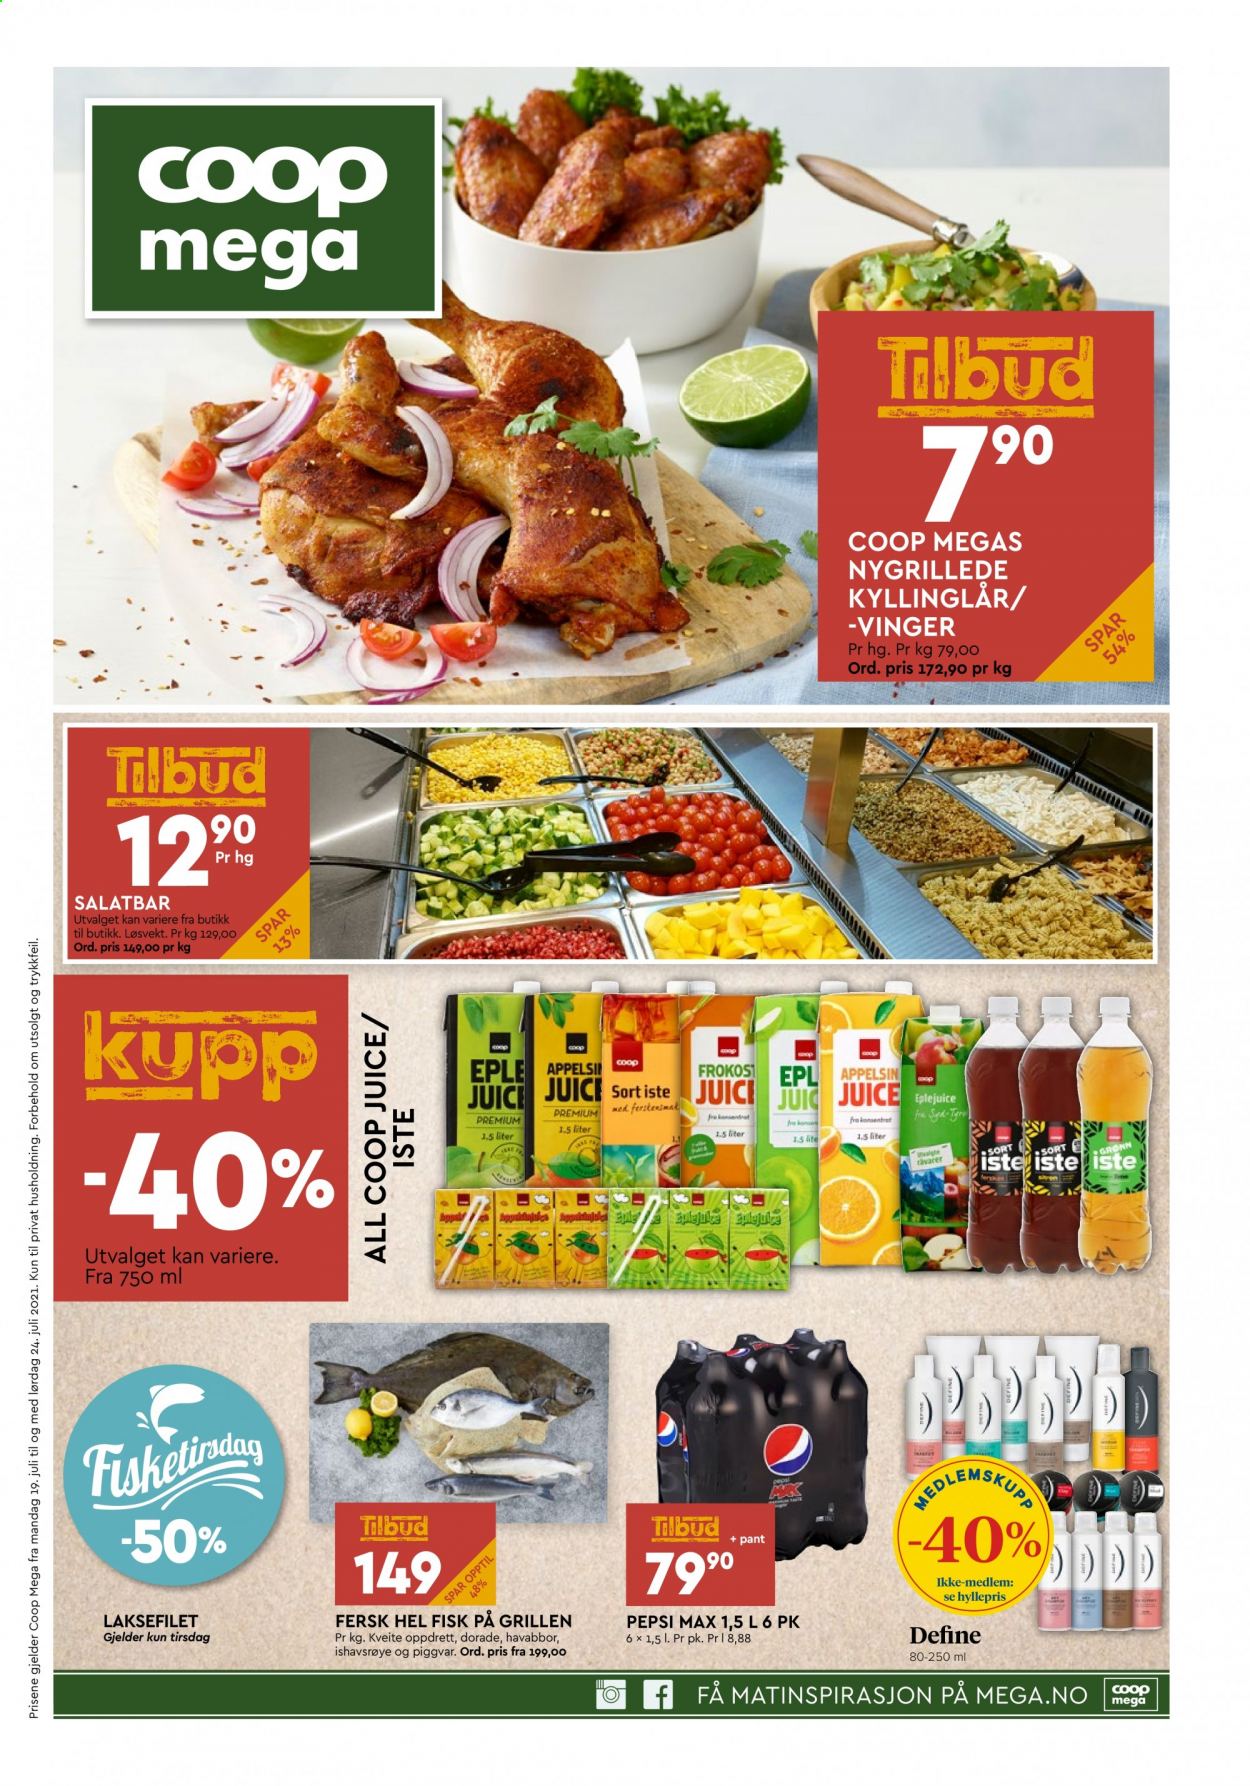 thumbnail - Kundeavis Coop Mega - 19.7.2021 - 24.7.2021 - Produkter fra tilbudsaviser - Define, kyllinglår, kyllingkjøtt, laksefilet, fisk, Pepsi, Pepsi Max. Side 1.